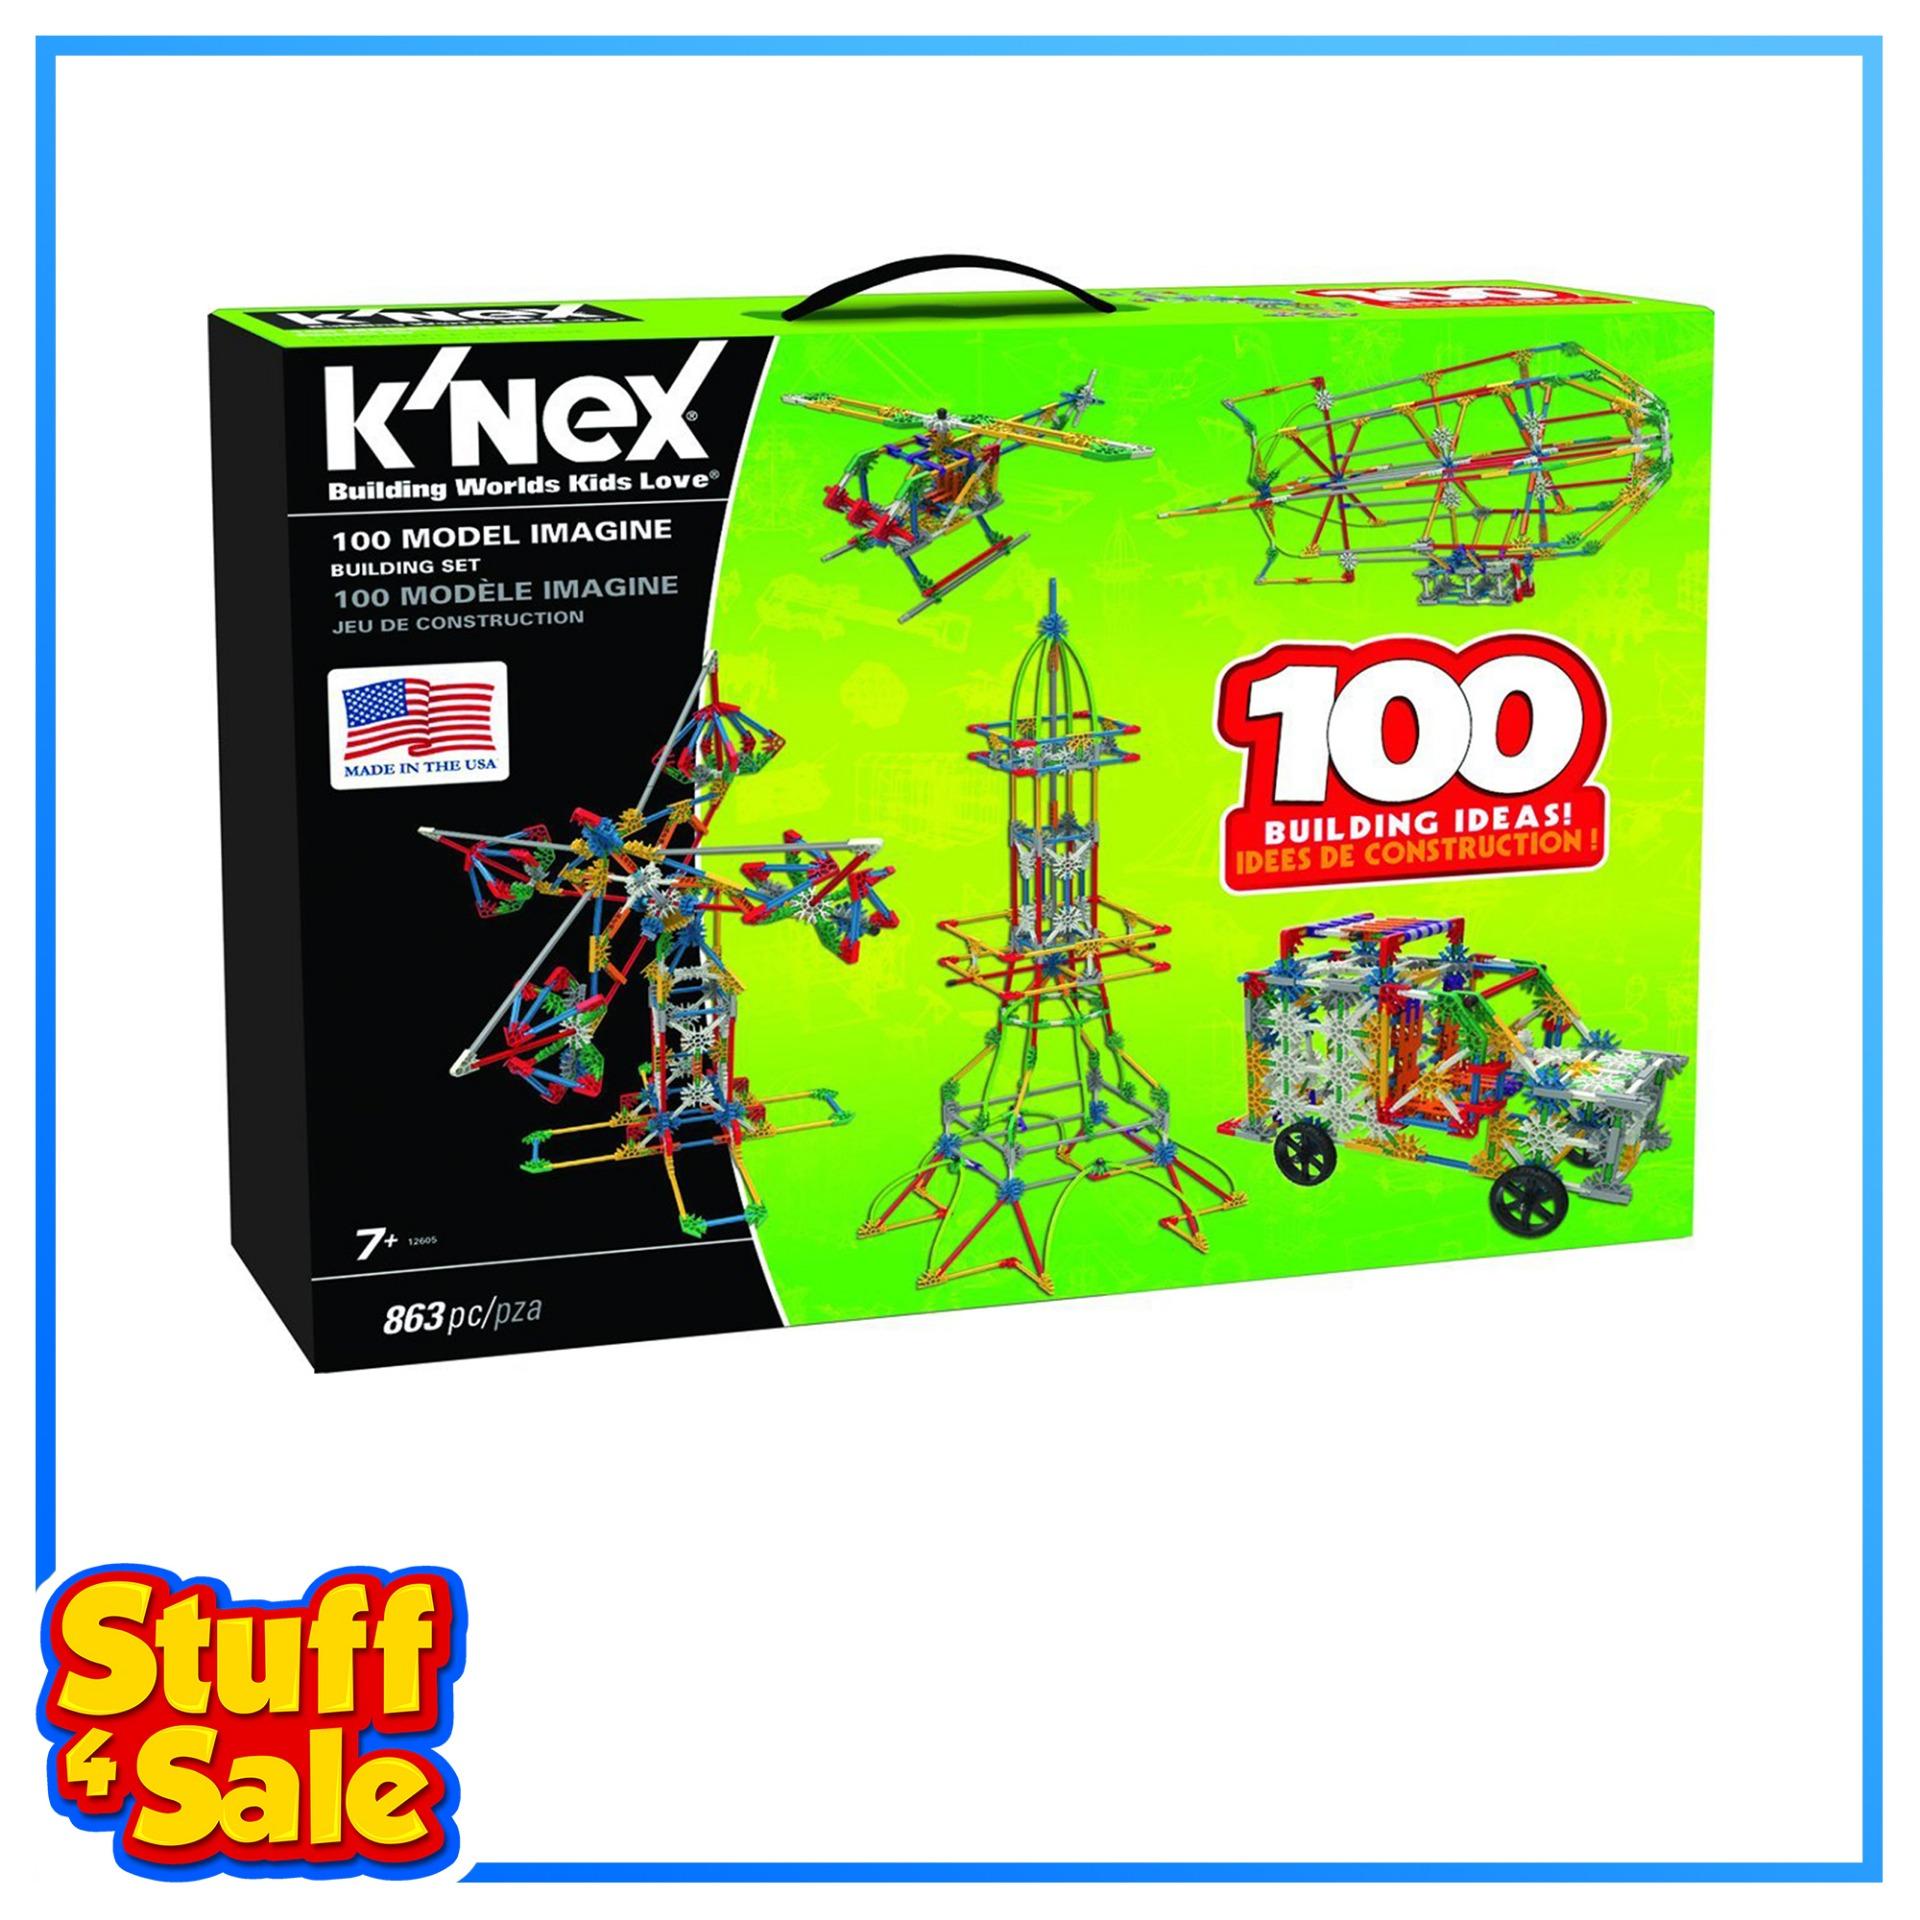 knex sale